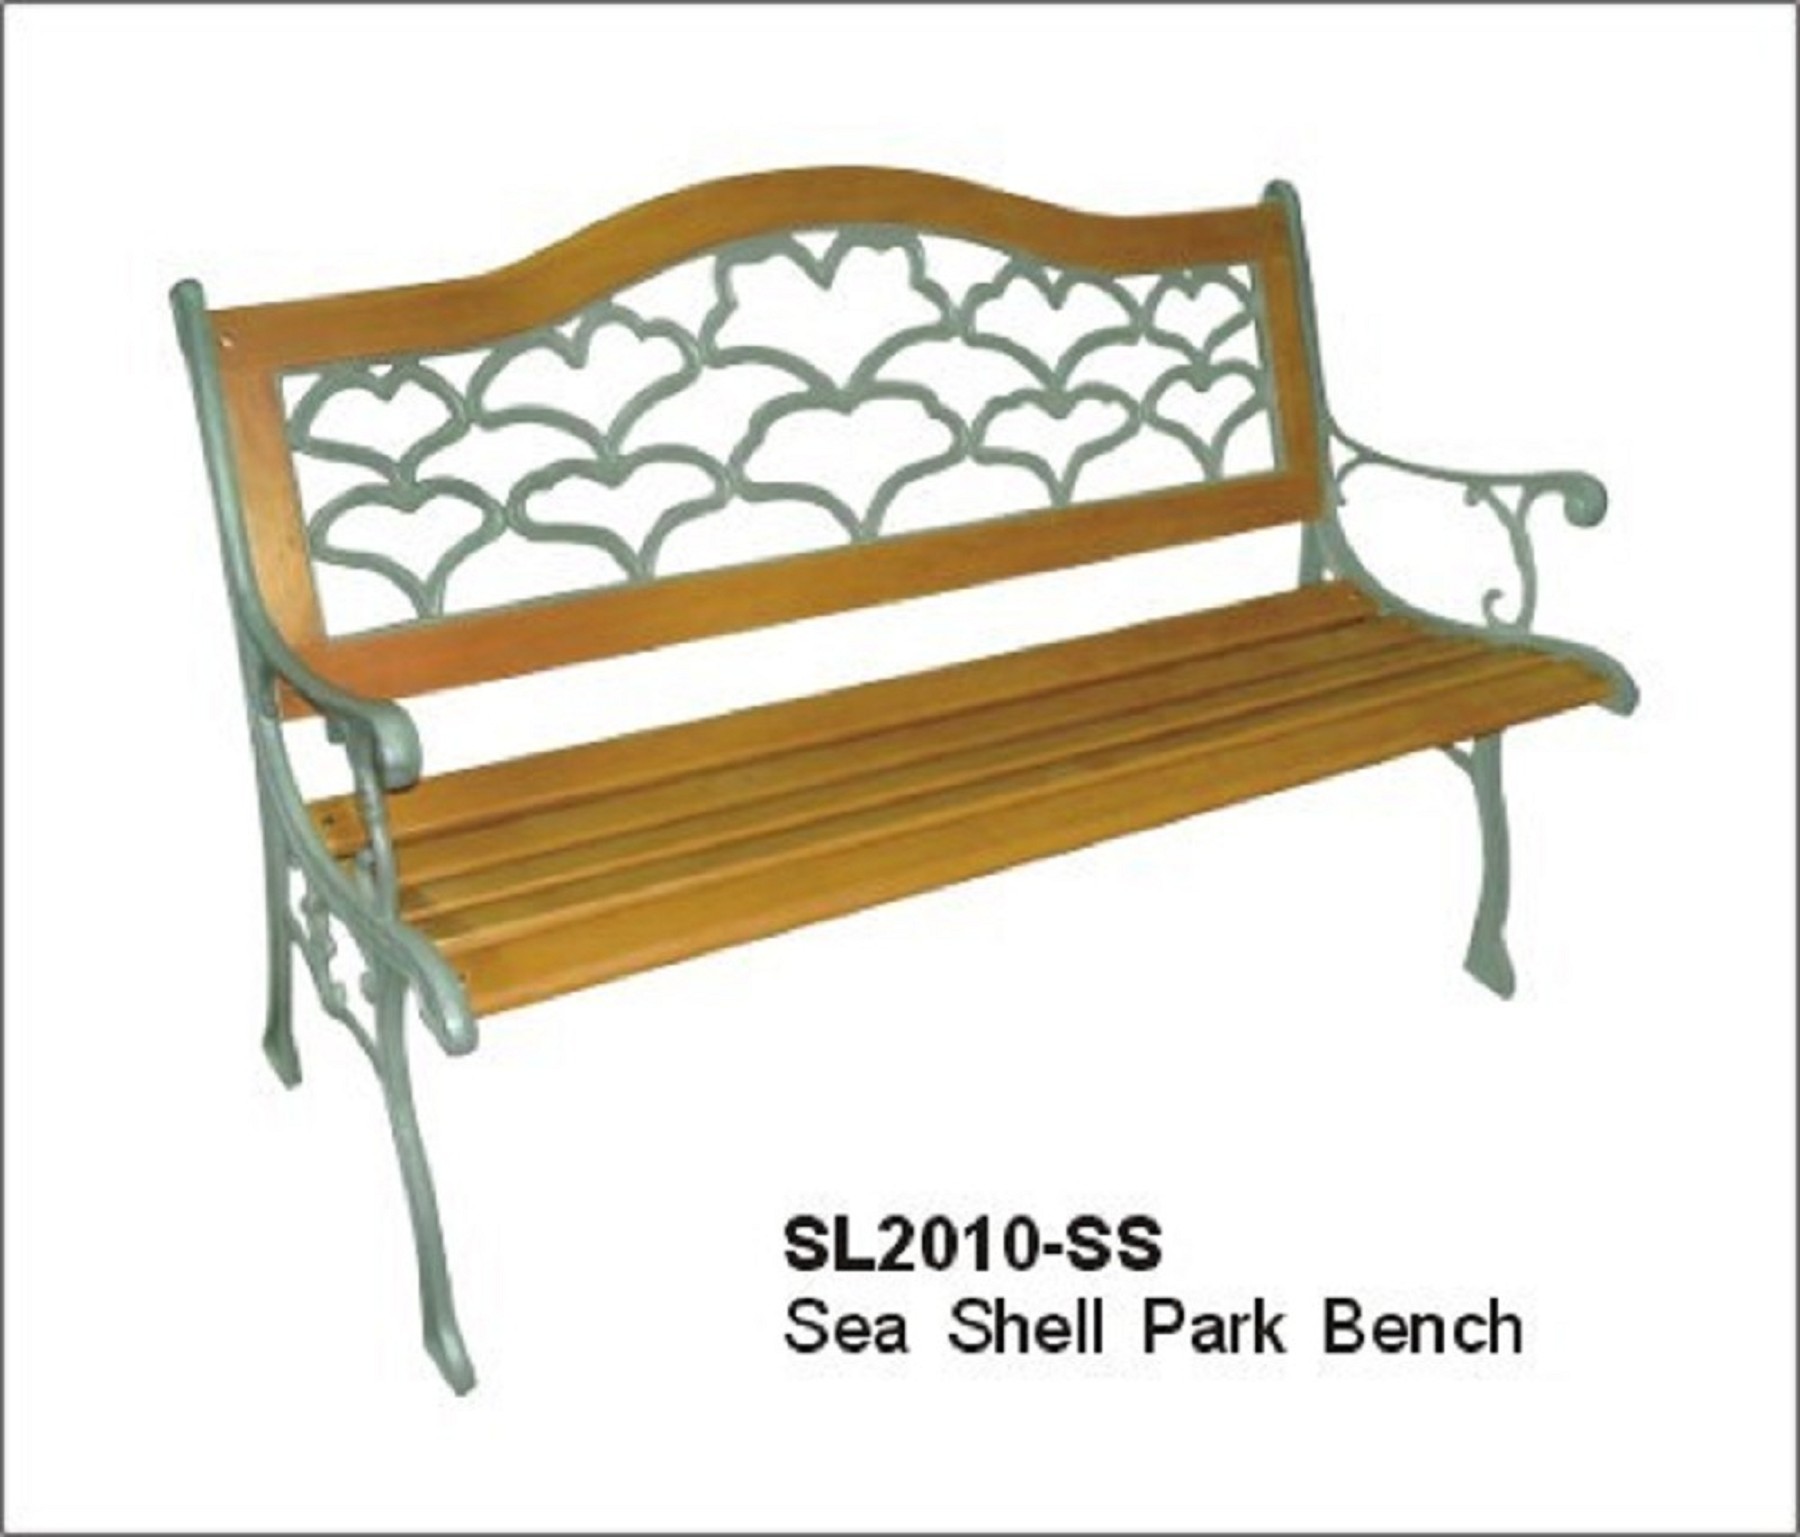 Seashell Park Bench